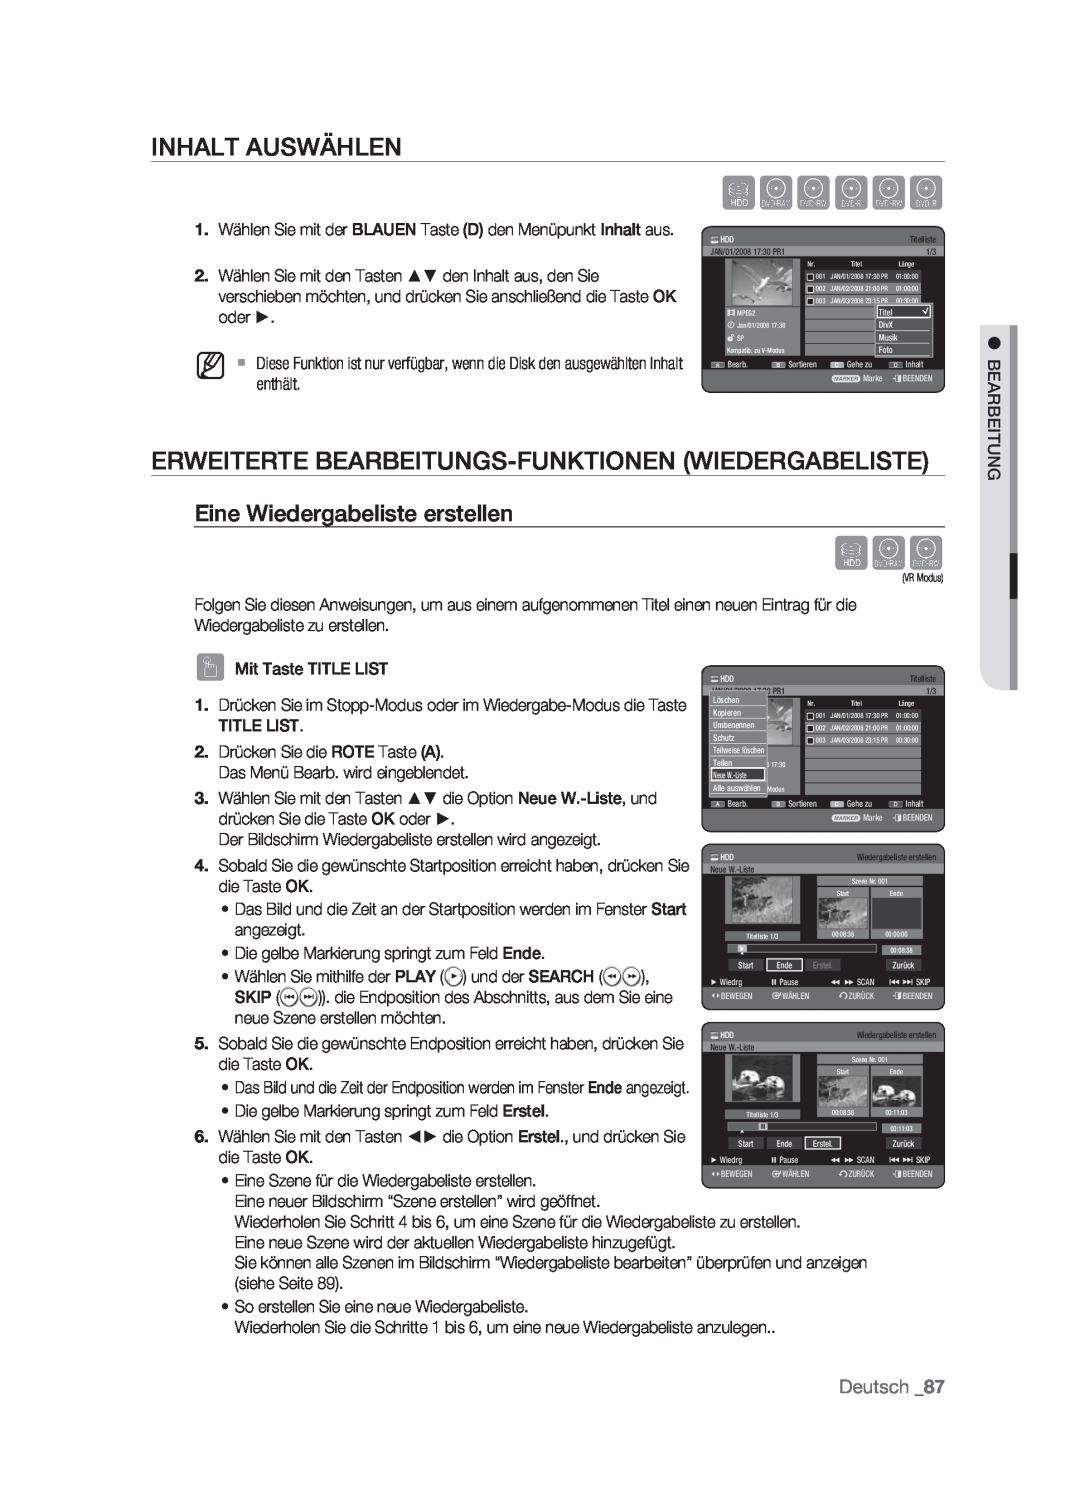 Samsung DVD-HR773/AUS Inhalt Auswählen, Erweiterte Bearbeitungs-Funktionen Wiedergabeliste, Eine Wiedergabeliste erstellen 